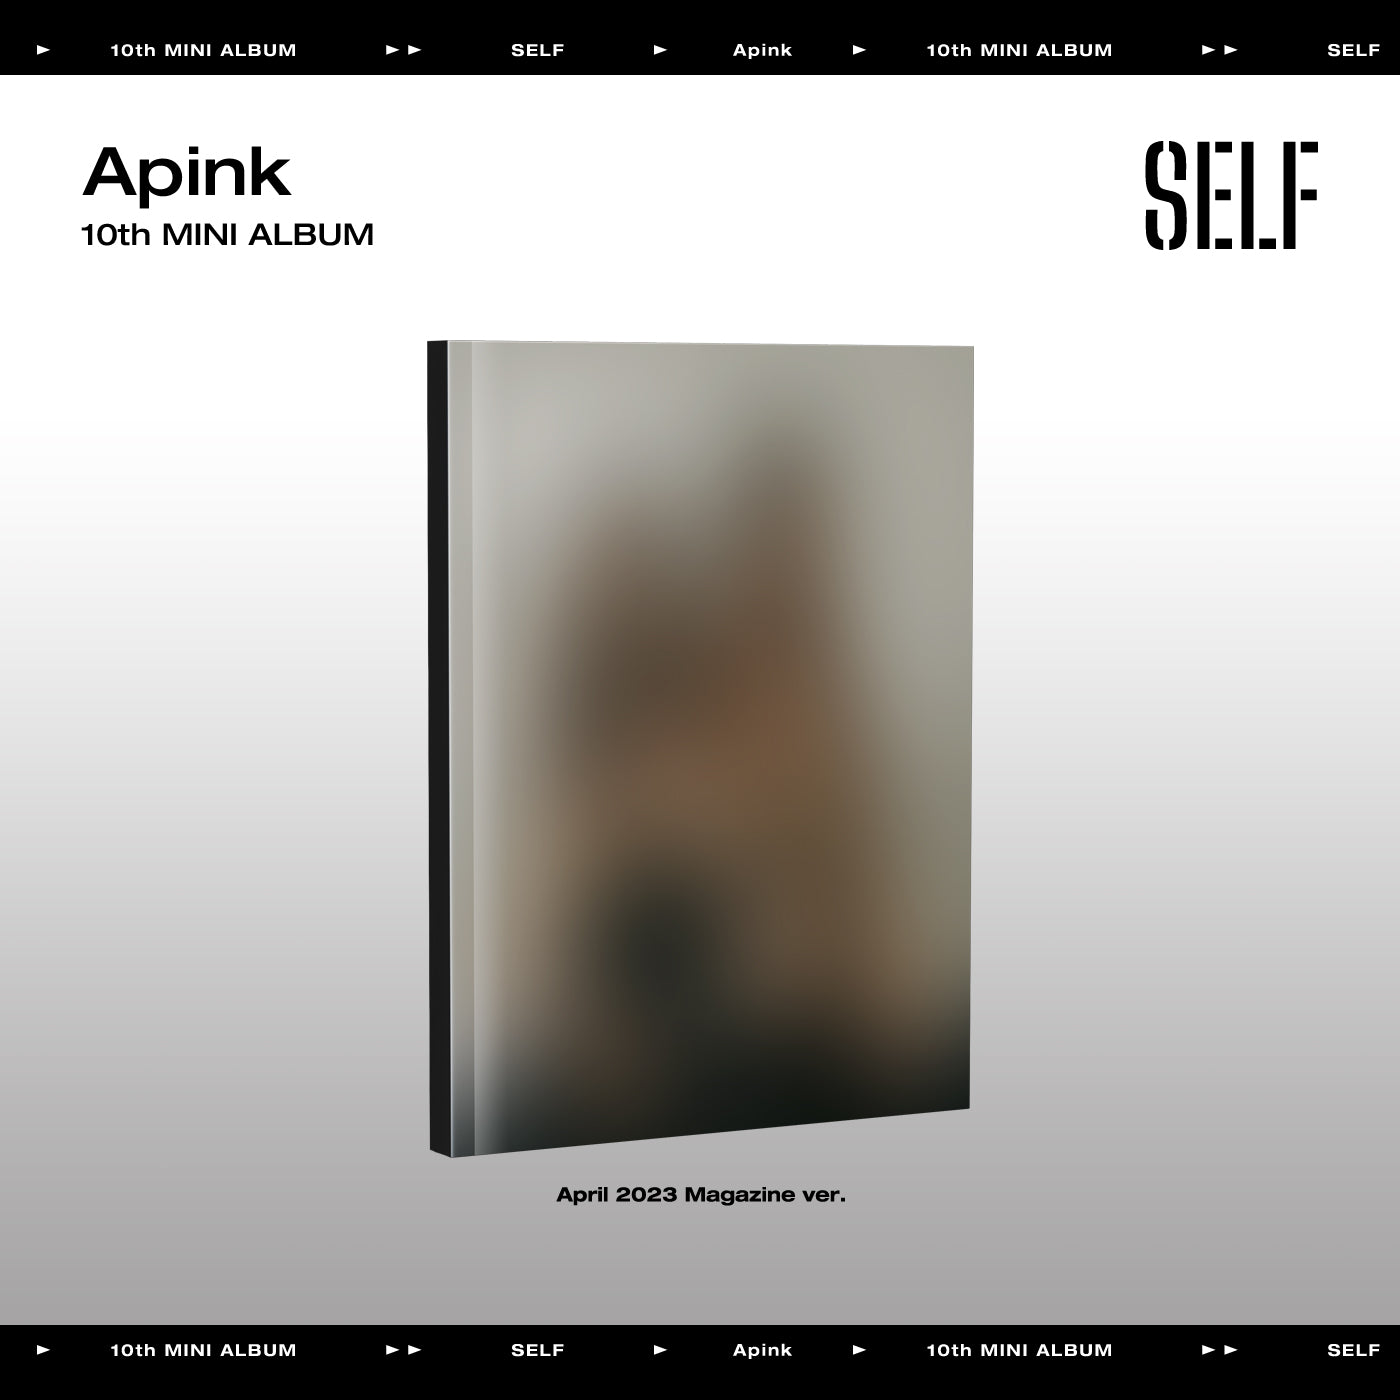 Apink - 10th Mini Album SELF (April 2023 magazine ver.)